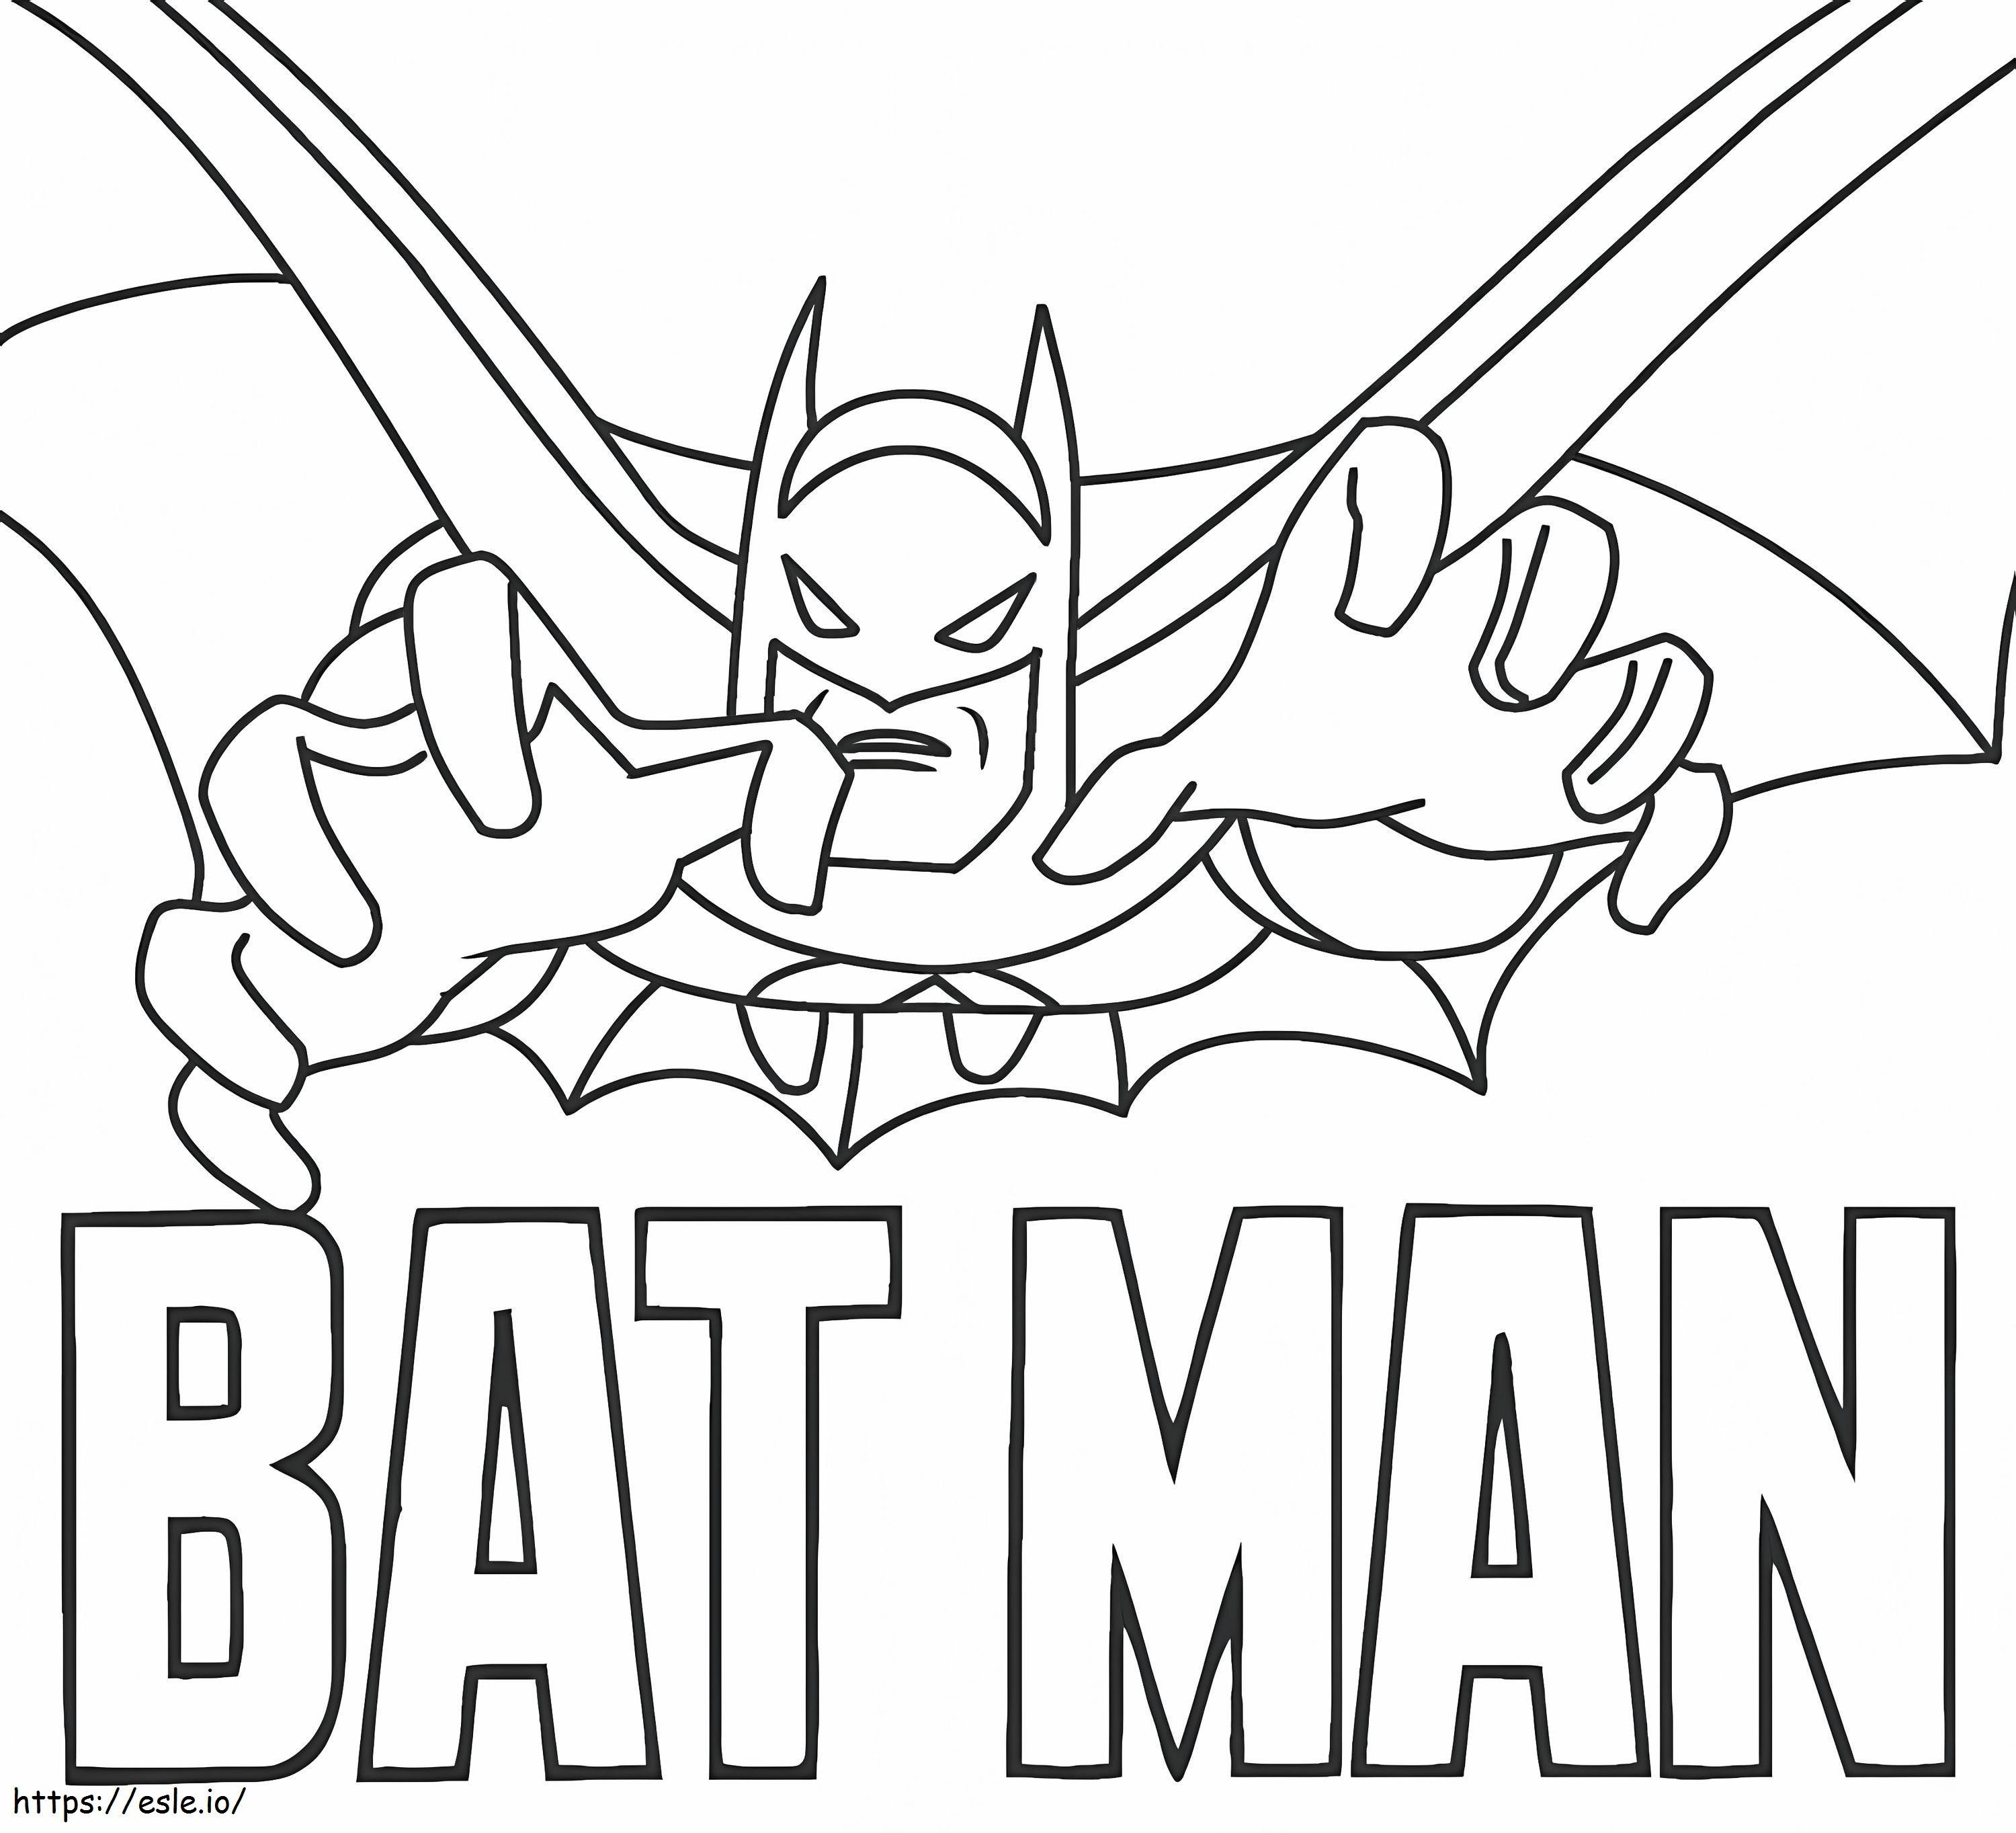 Bruce Wayne Alias Batman coloring page